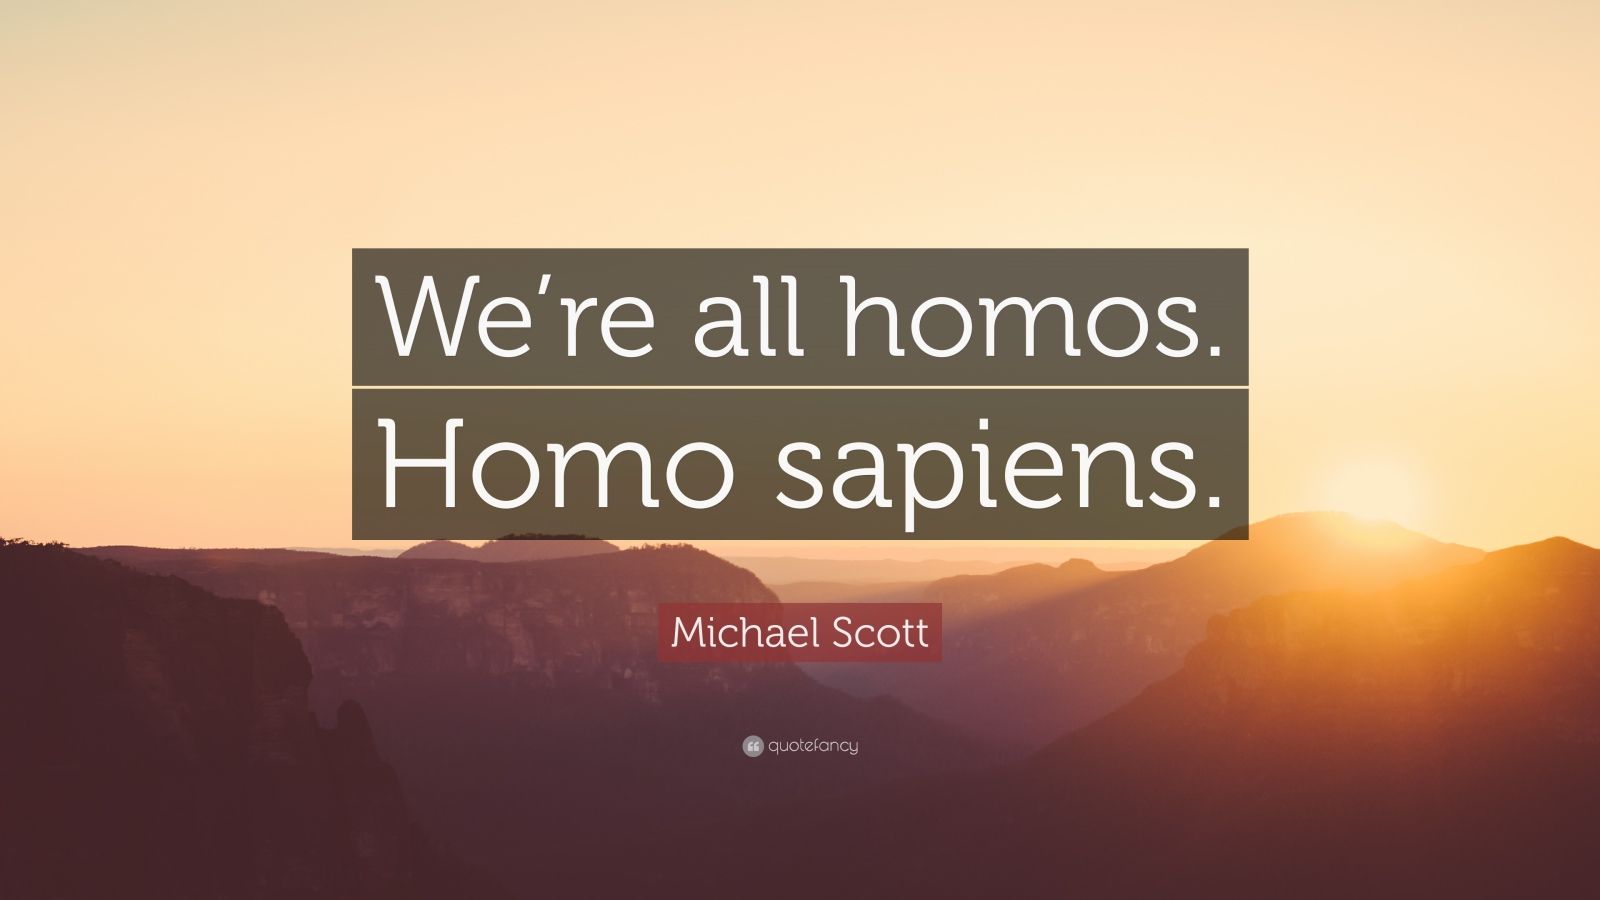 Michael Scott Quote: “We're all homos. Homo sapiens.”